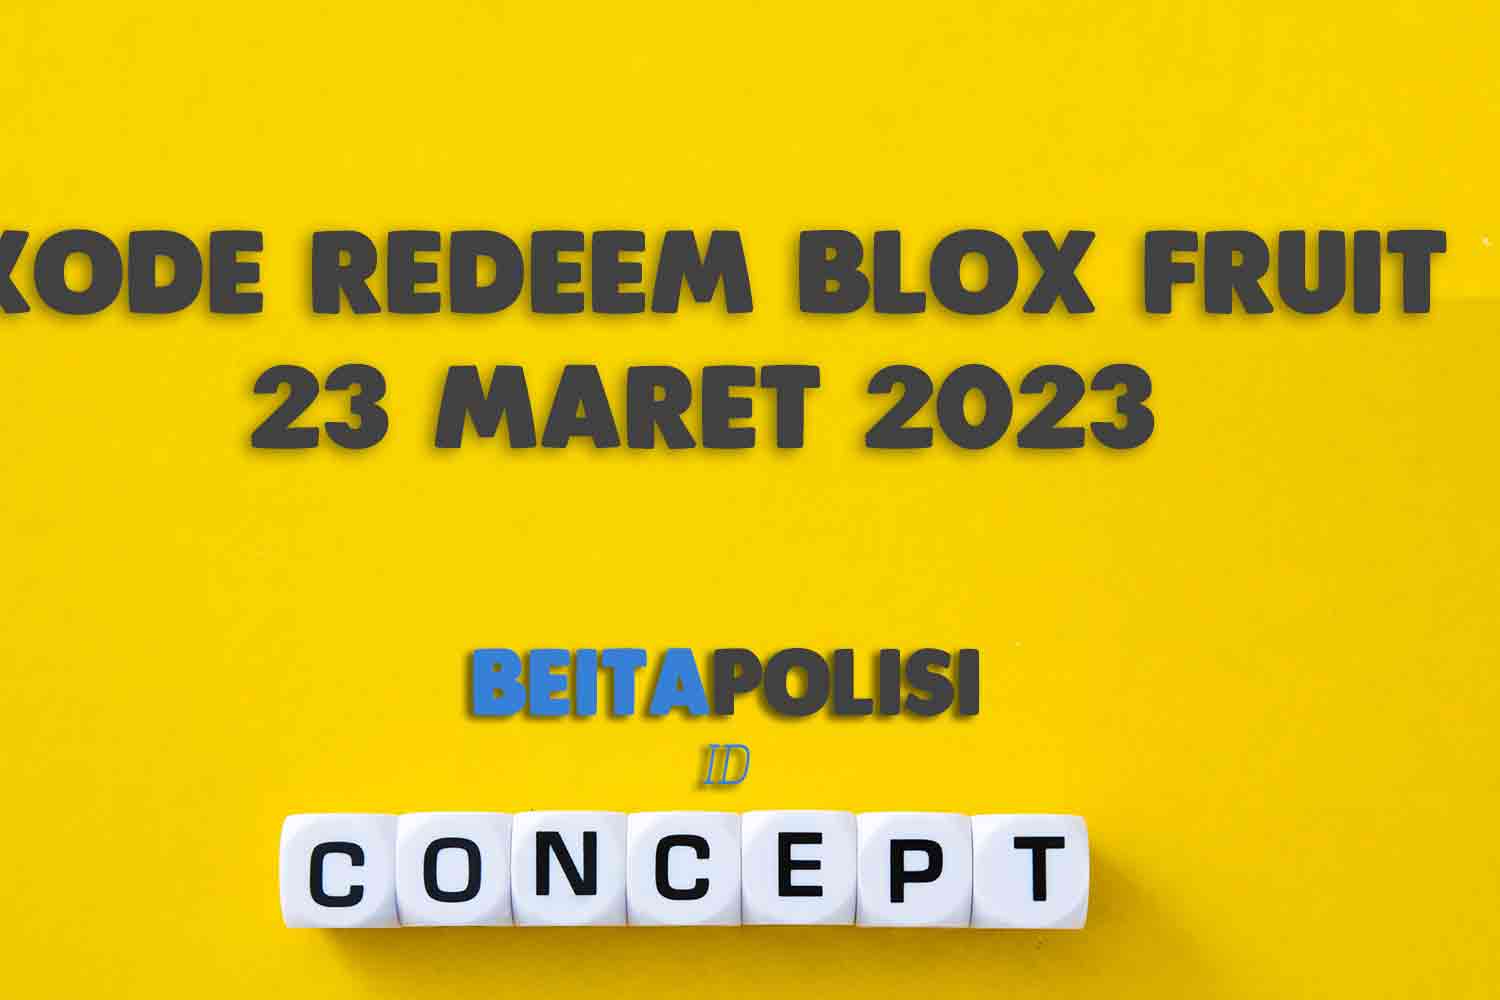 Kode Redeem Blox Fruit 23 Maret 2023